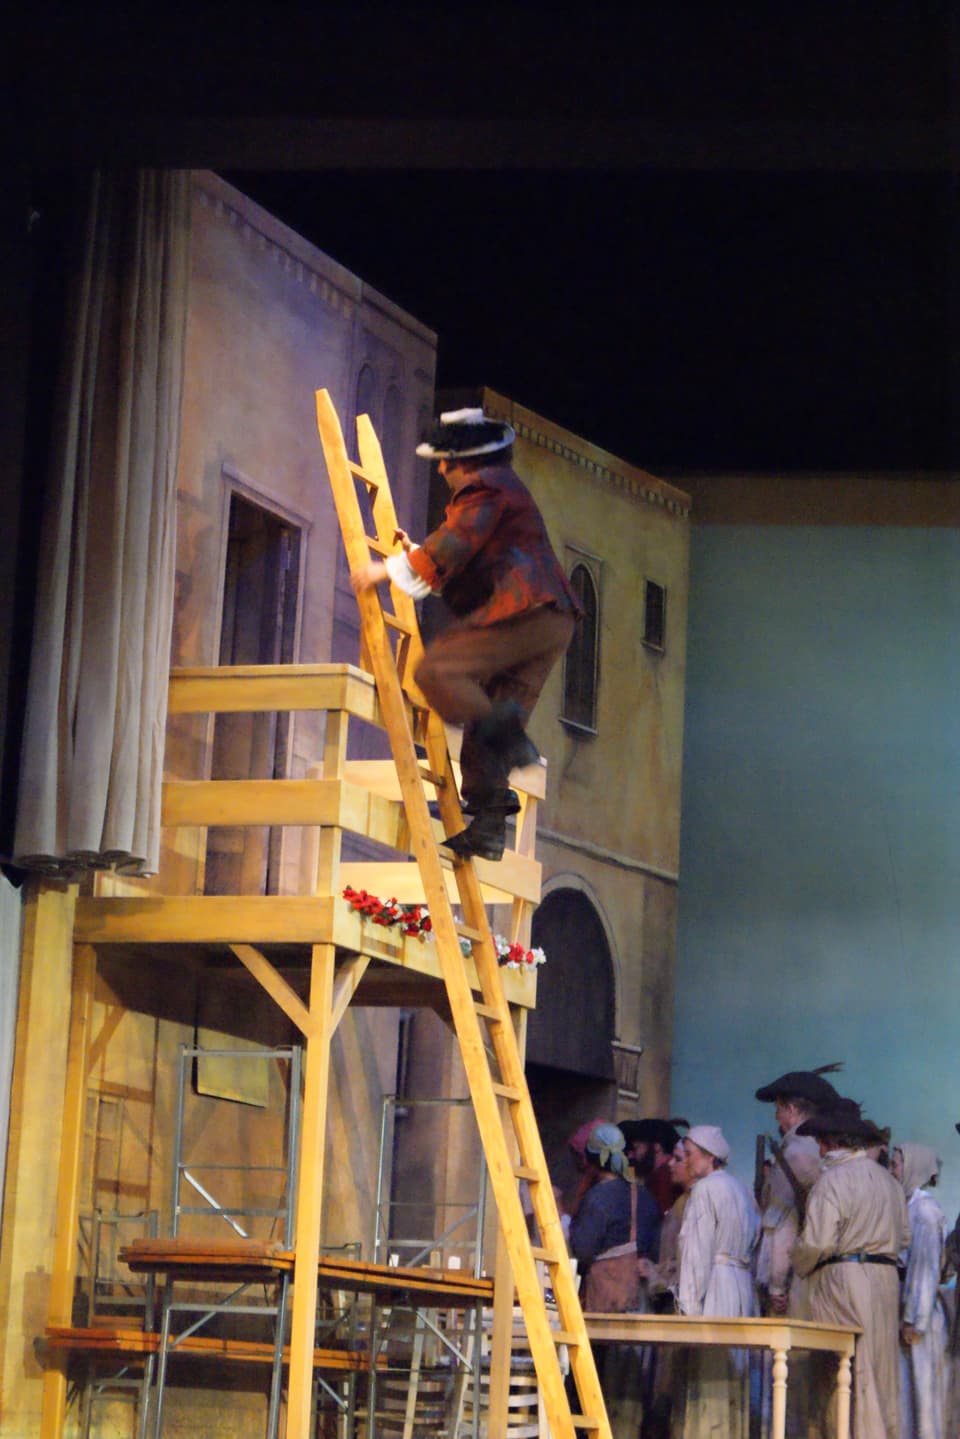 Mann auf Leiter, die an Balkon angelehnt ist.